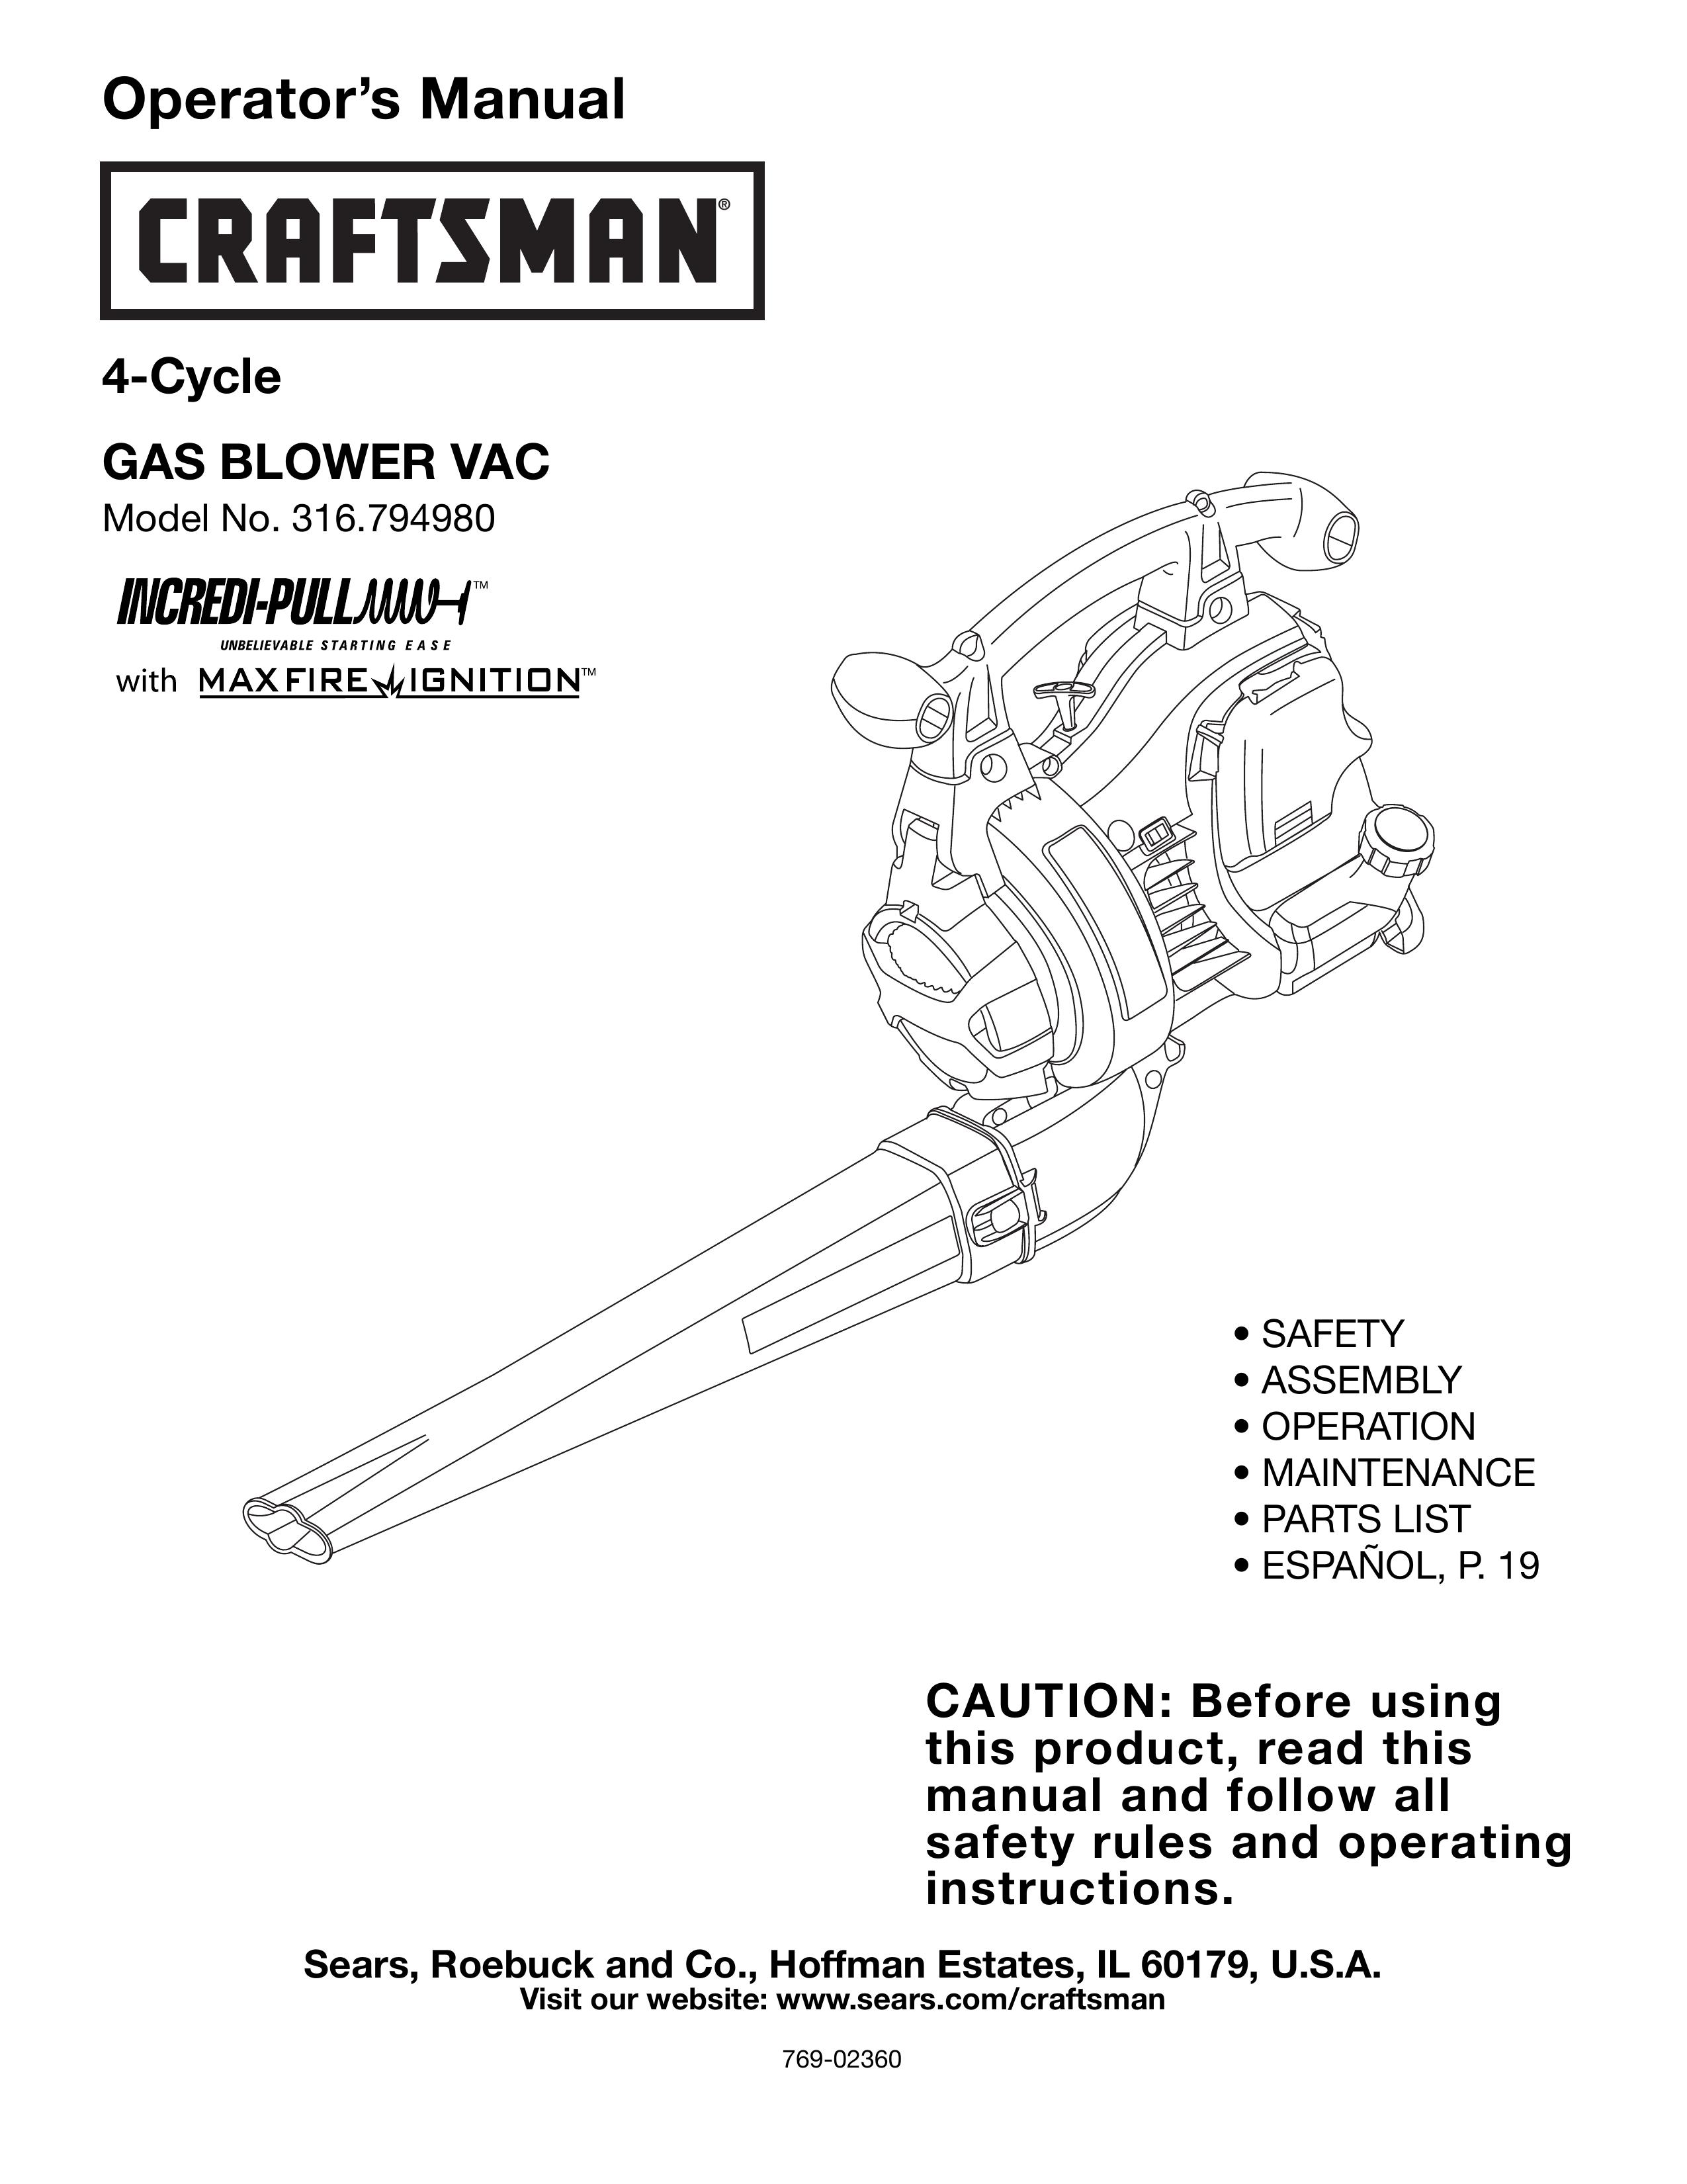 Craftsman 316.79498 Blower User Manual